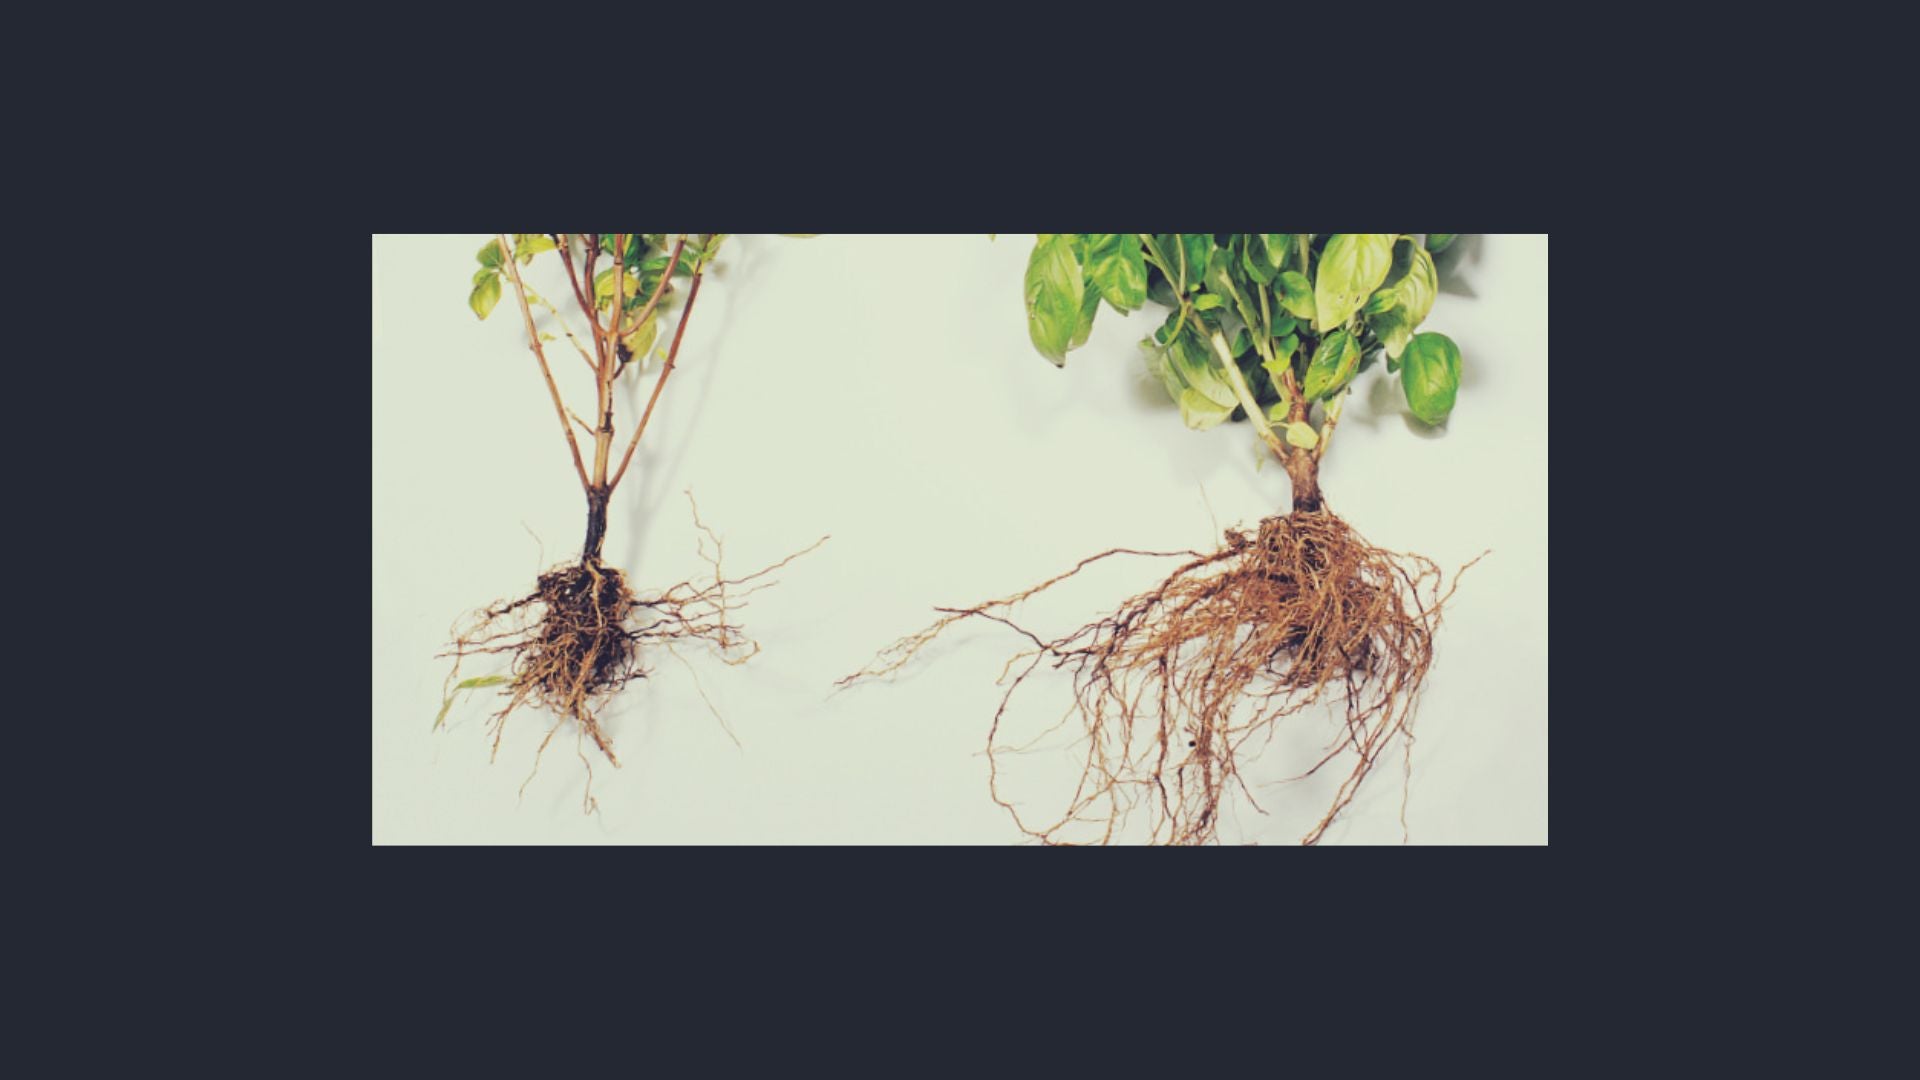 Comparaison visuelle des systèmes racinaires de deux plantes, l'une avec des mycorhizes montrant des racines plus développées et l'autre sans mycorhizes avec des racines moins denses.